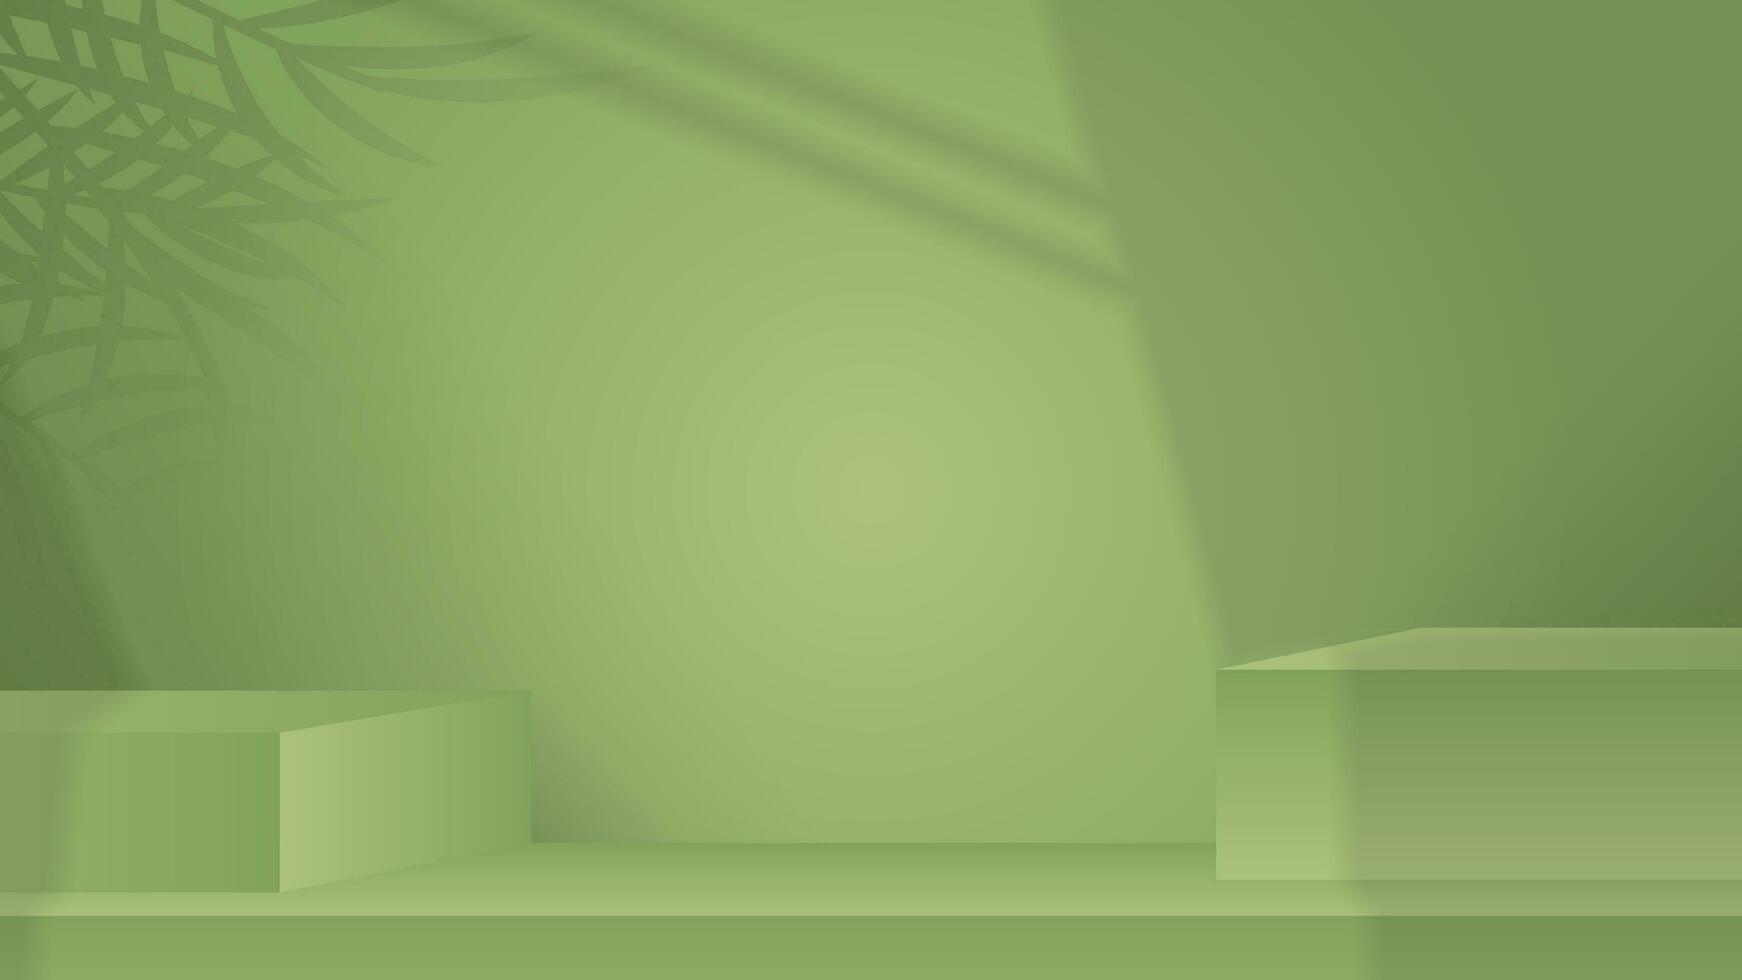 3d groen stadium voor natuur Product Scherm met schaduw blad. groen muur achtergrond voor kunstmatig Product vector illustratie eps10